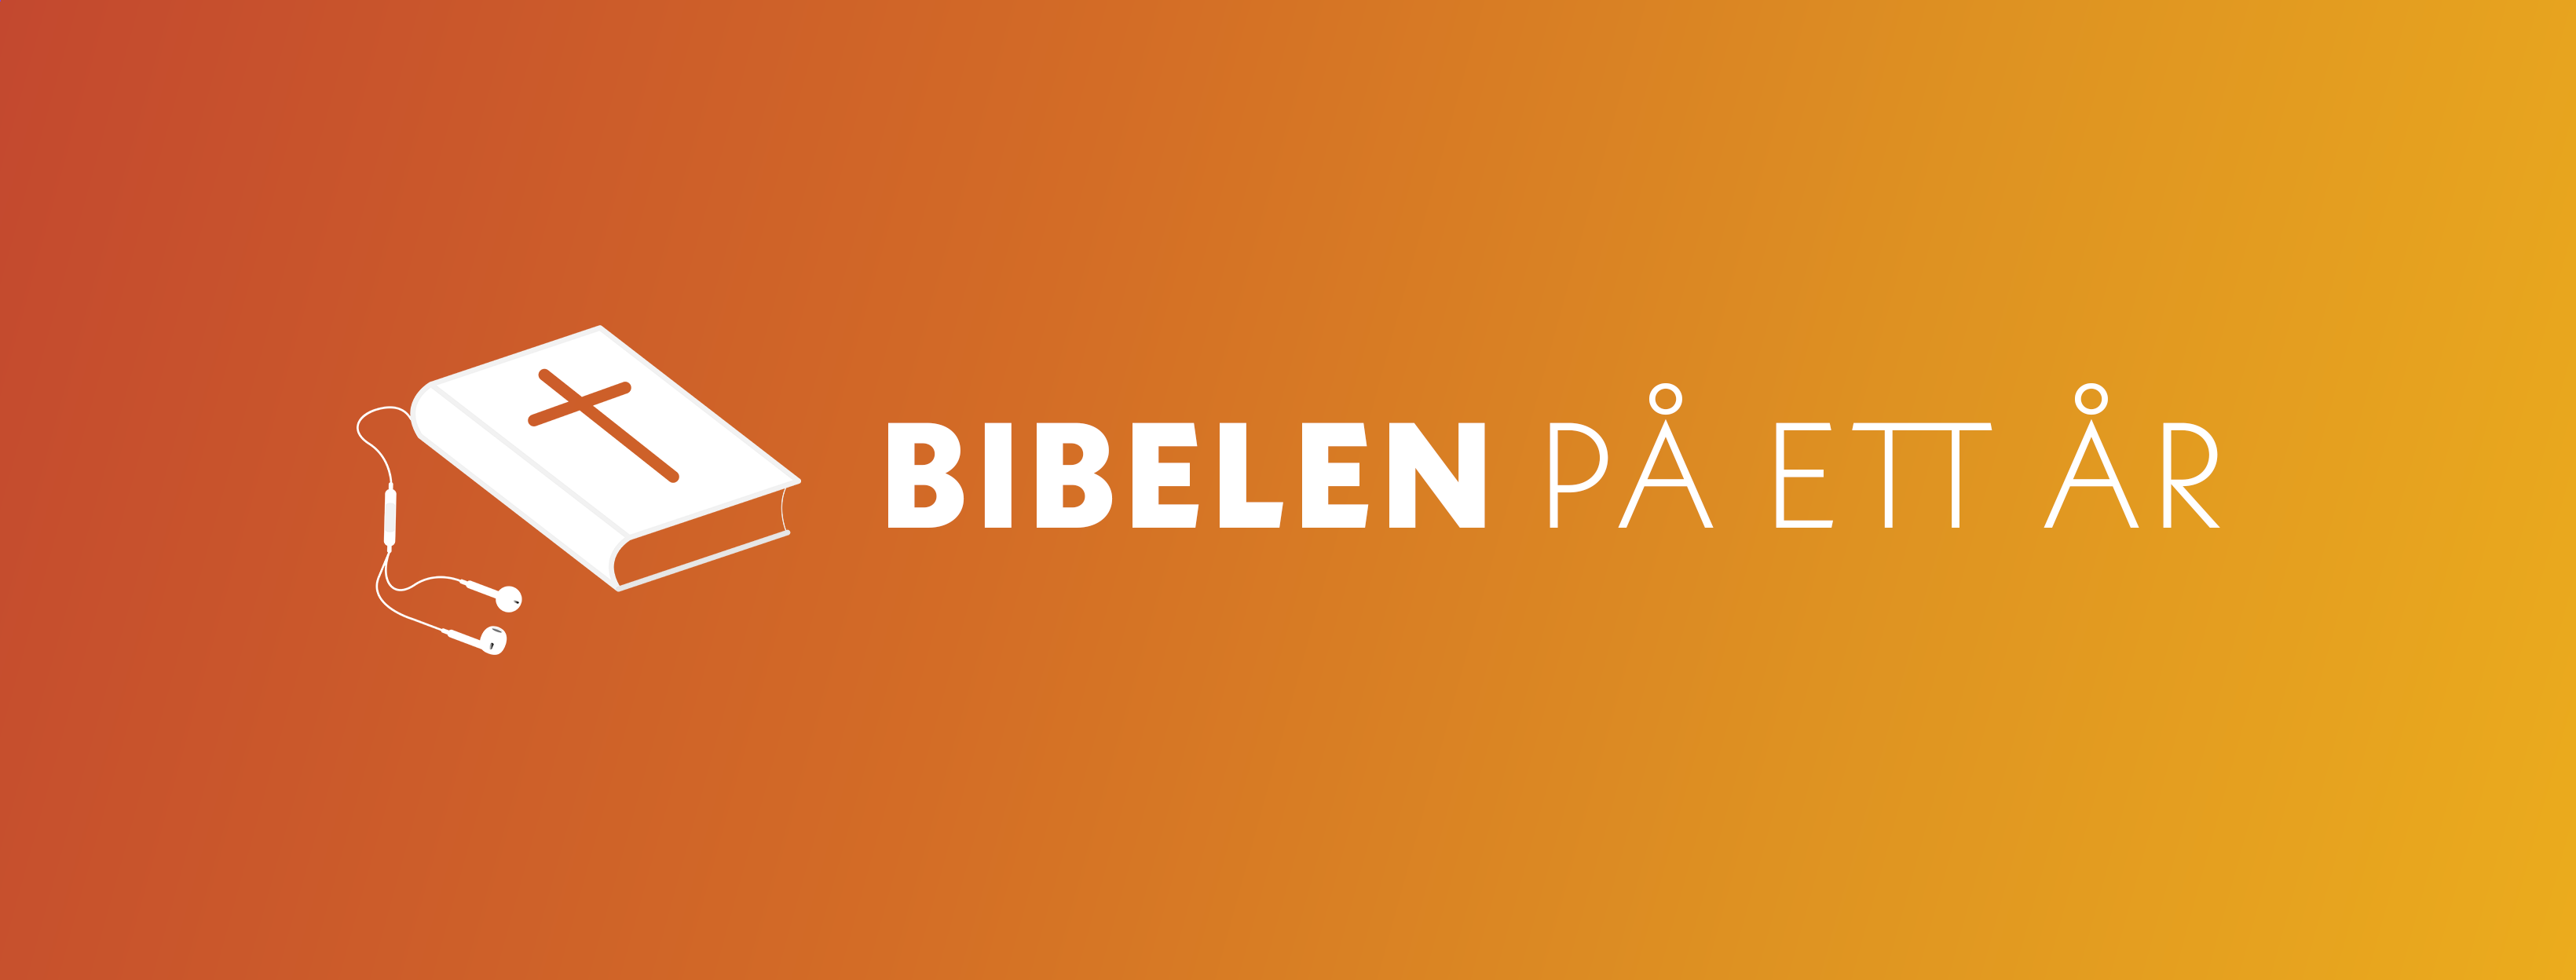 Bibelen på ett år - logo